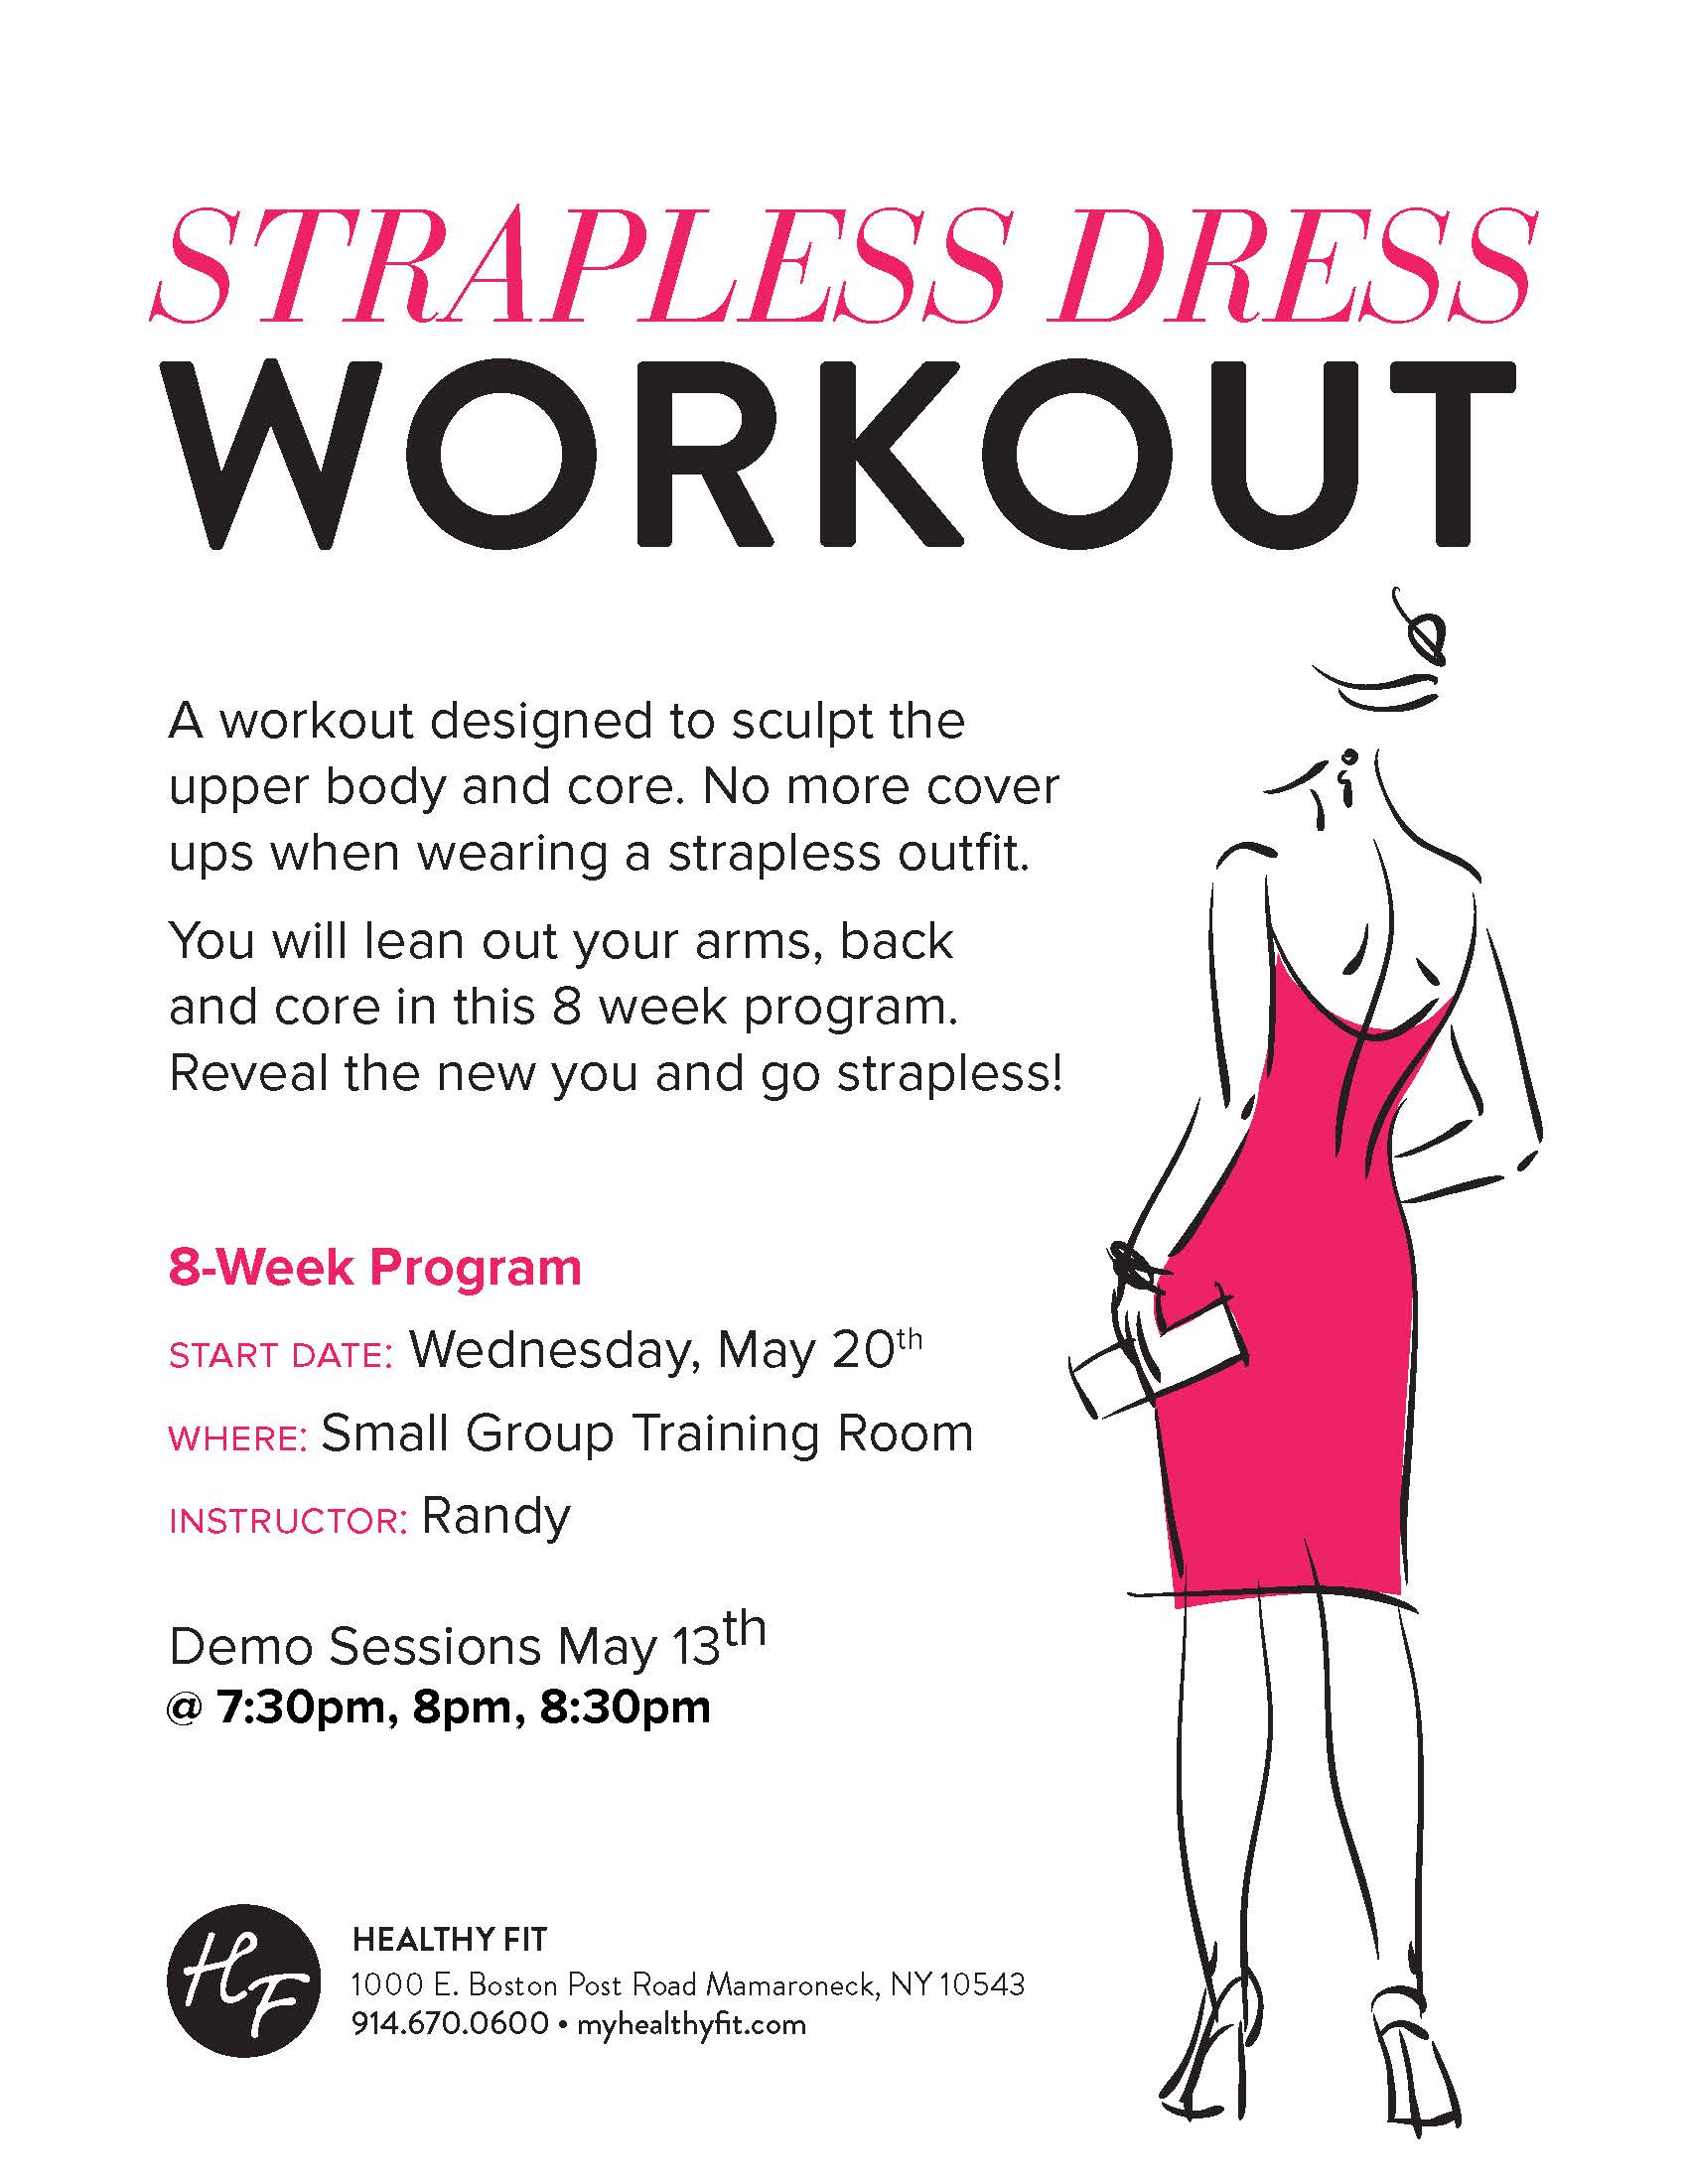 https://www.myhealthyfit.com/wp-content/uploads/2015/05/Strapless-Dress-Workout-jpeg.jpg